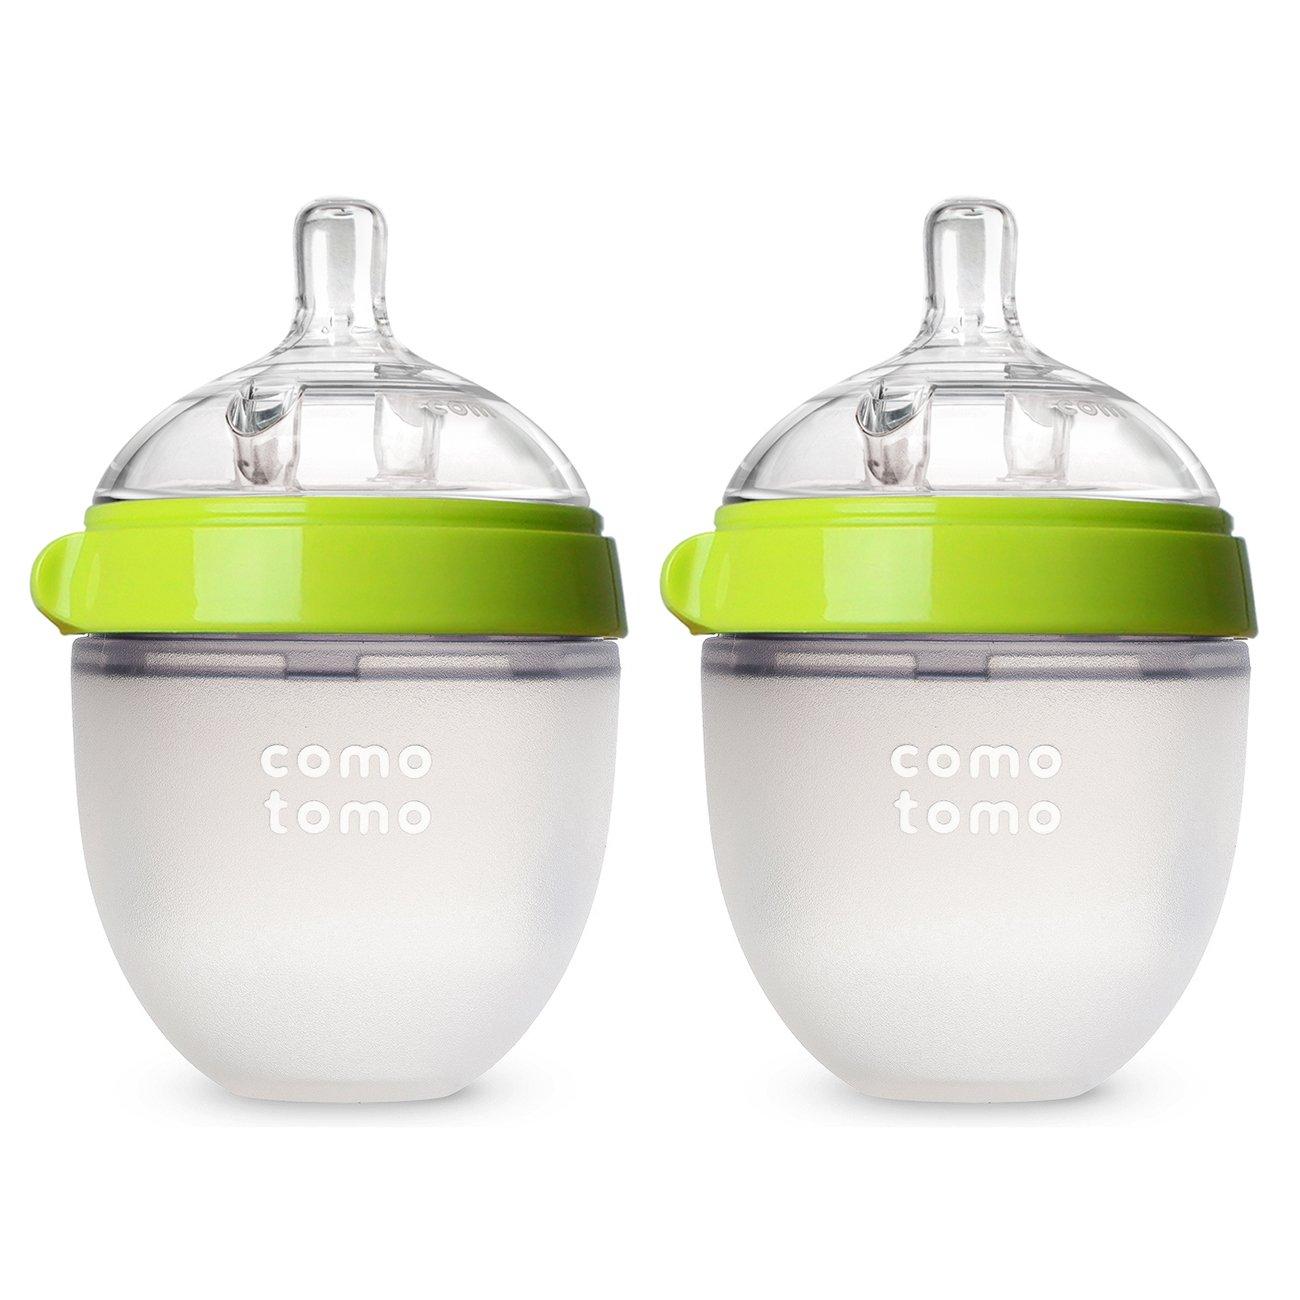 2 Comotomo Baby Bottles for $11.99